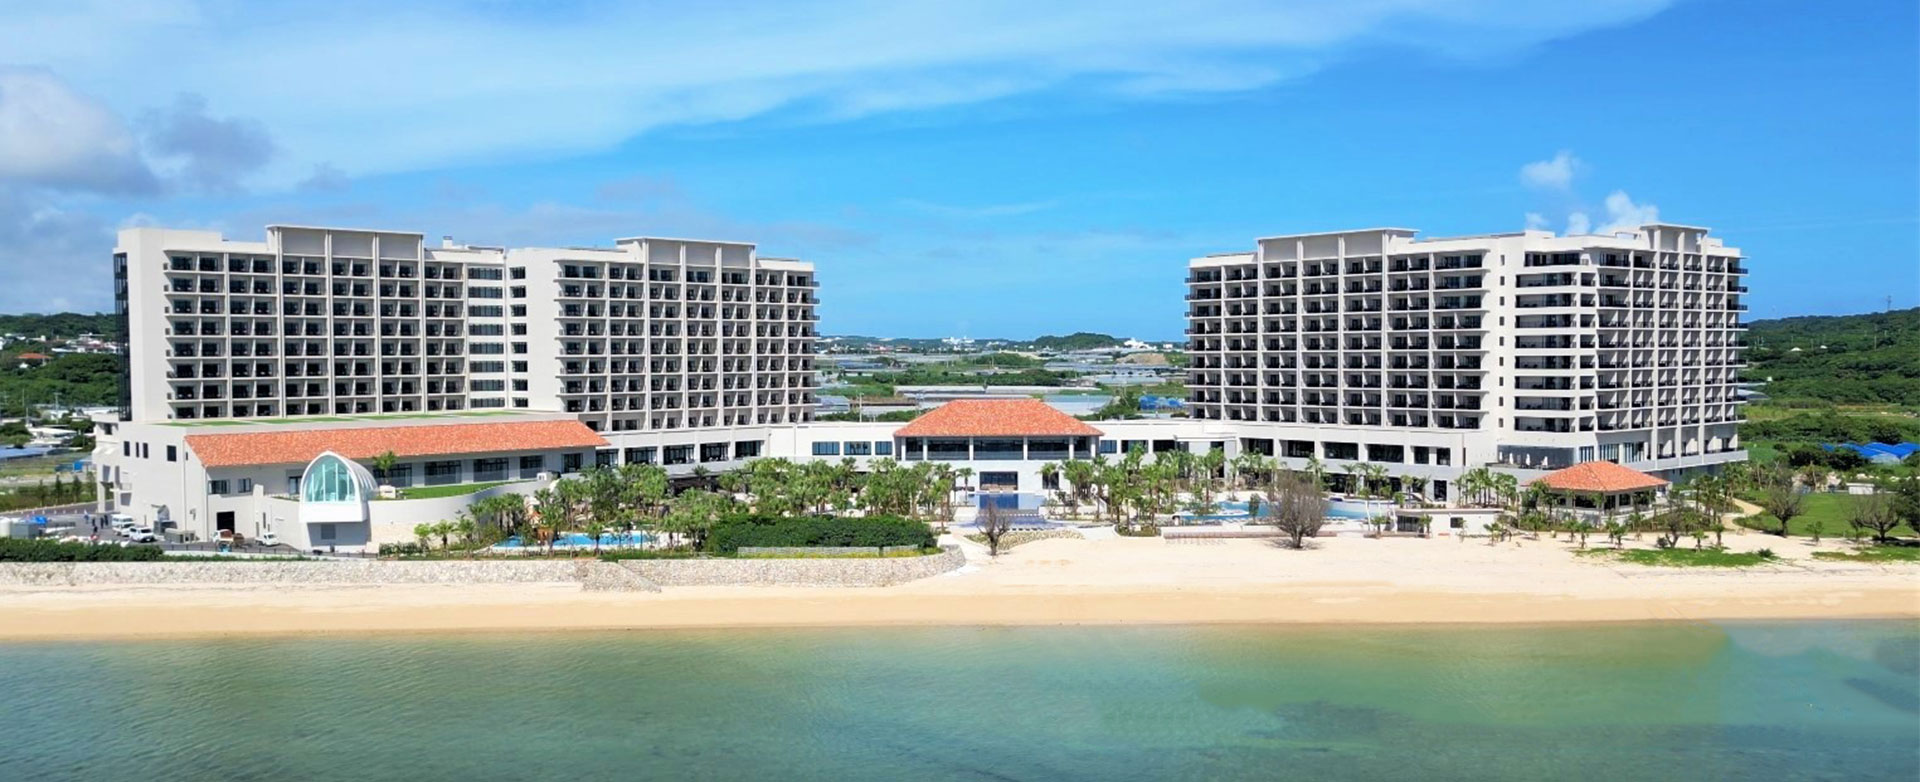 沖縄最高級のホテルで行う、最上級のリゾートMICE